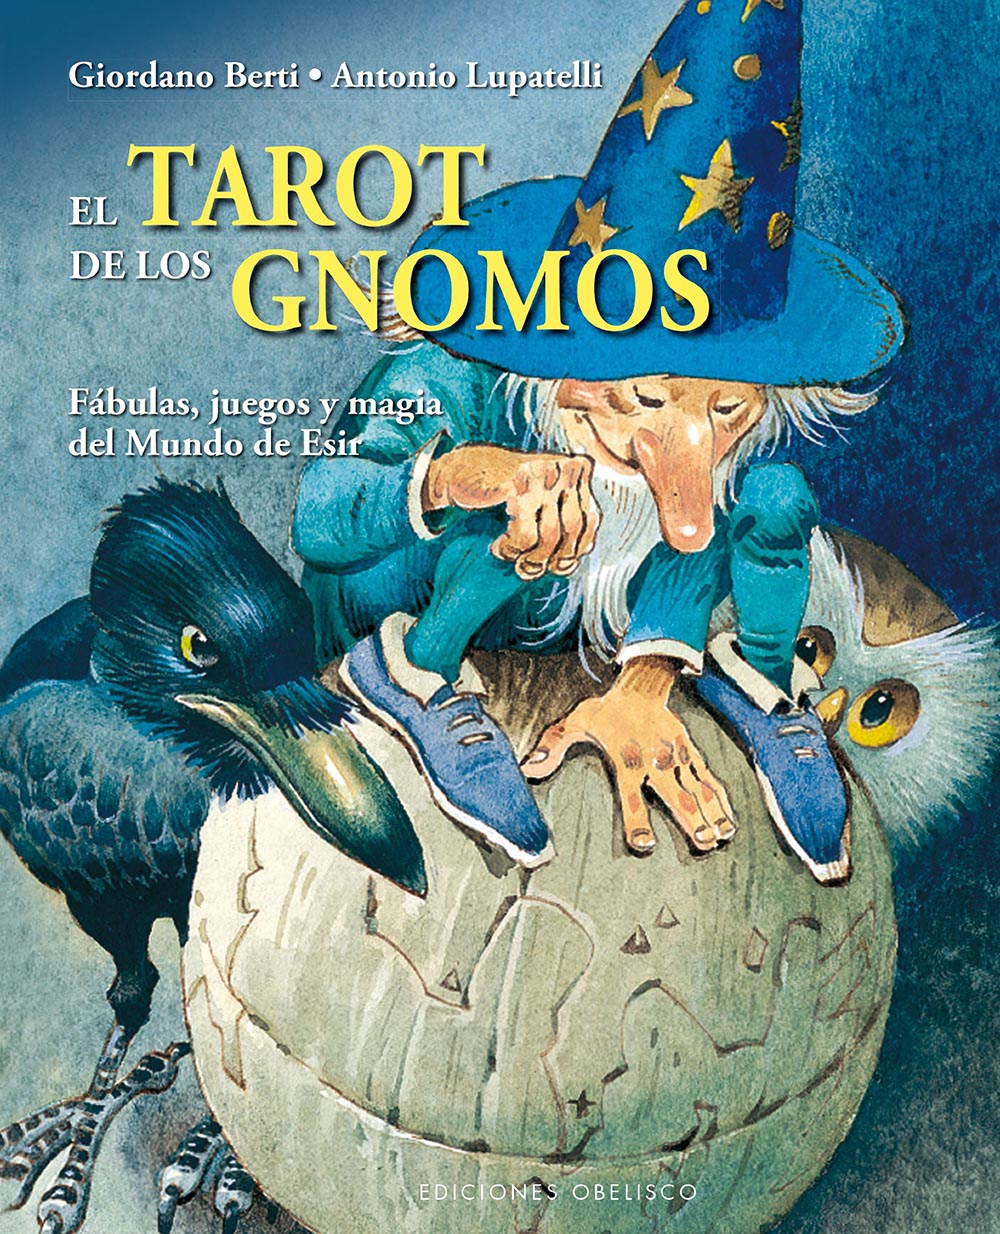 El Tarot de los Gnomos (Libro y Tarot)